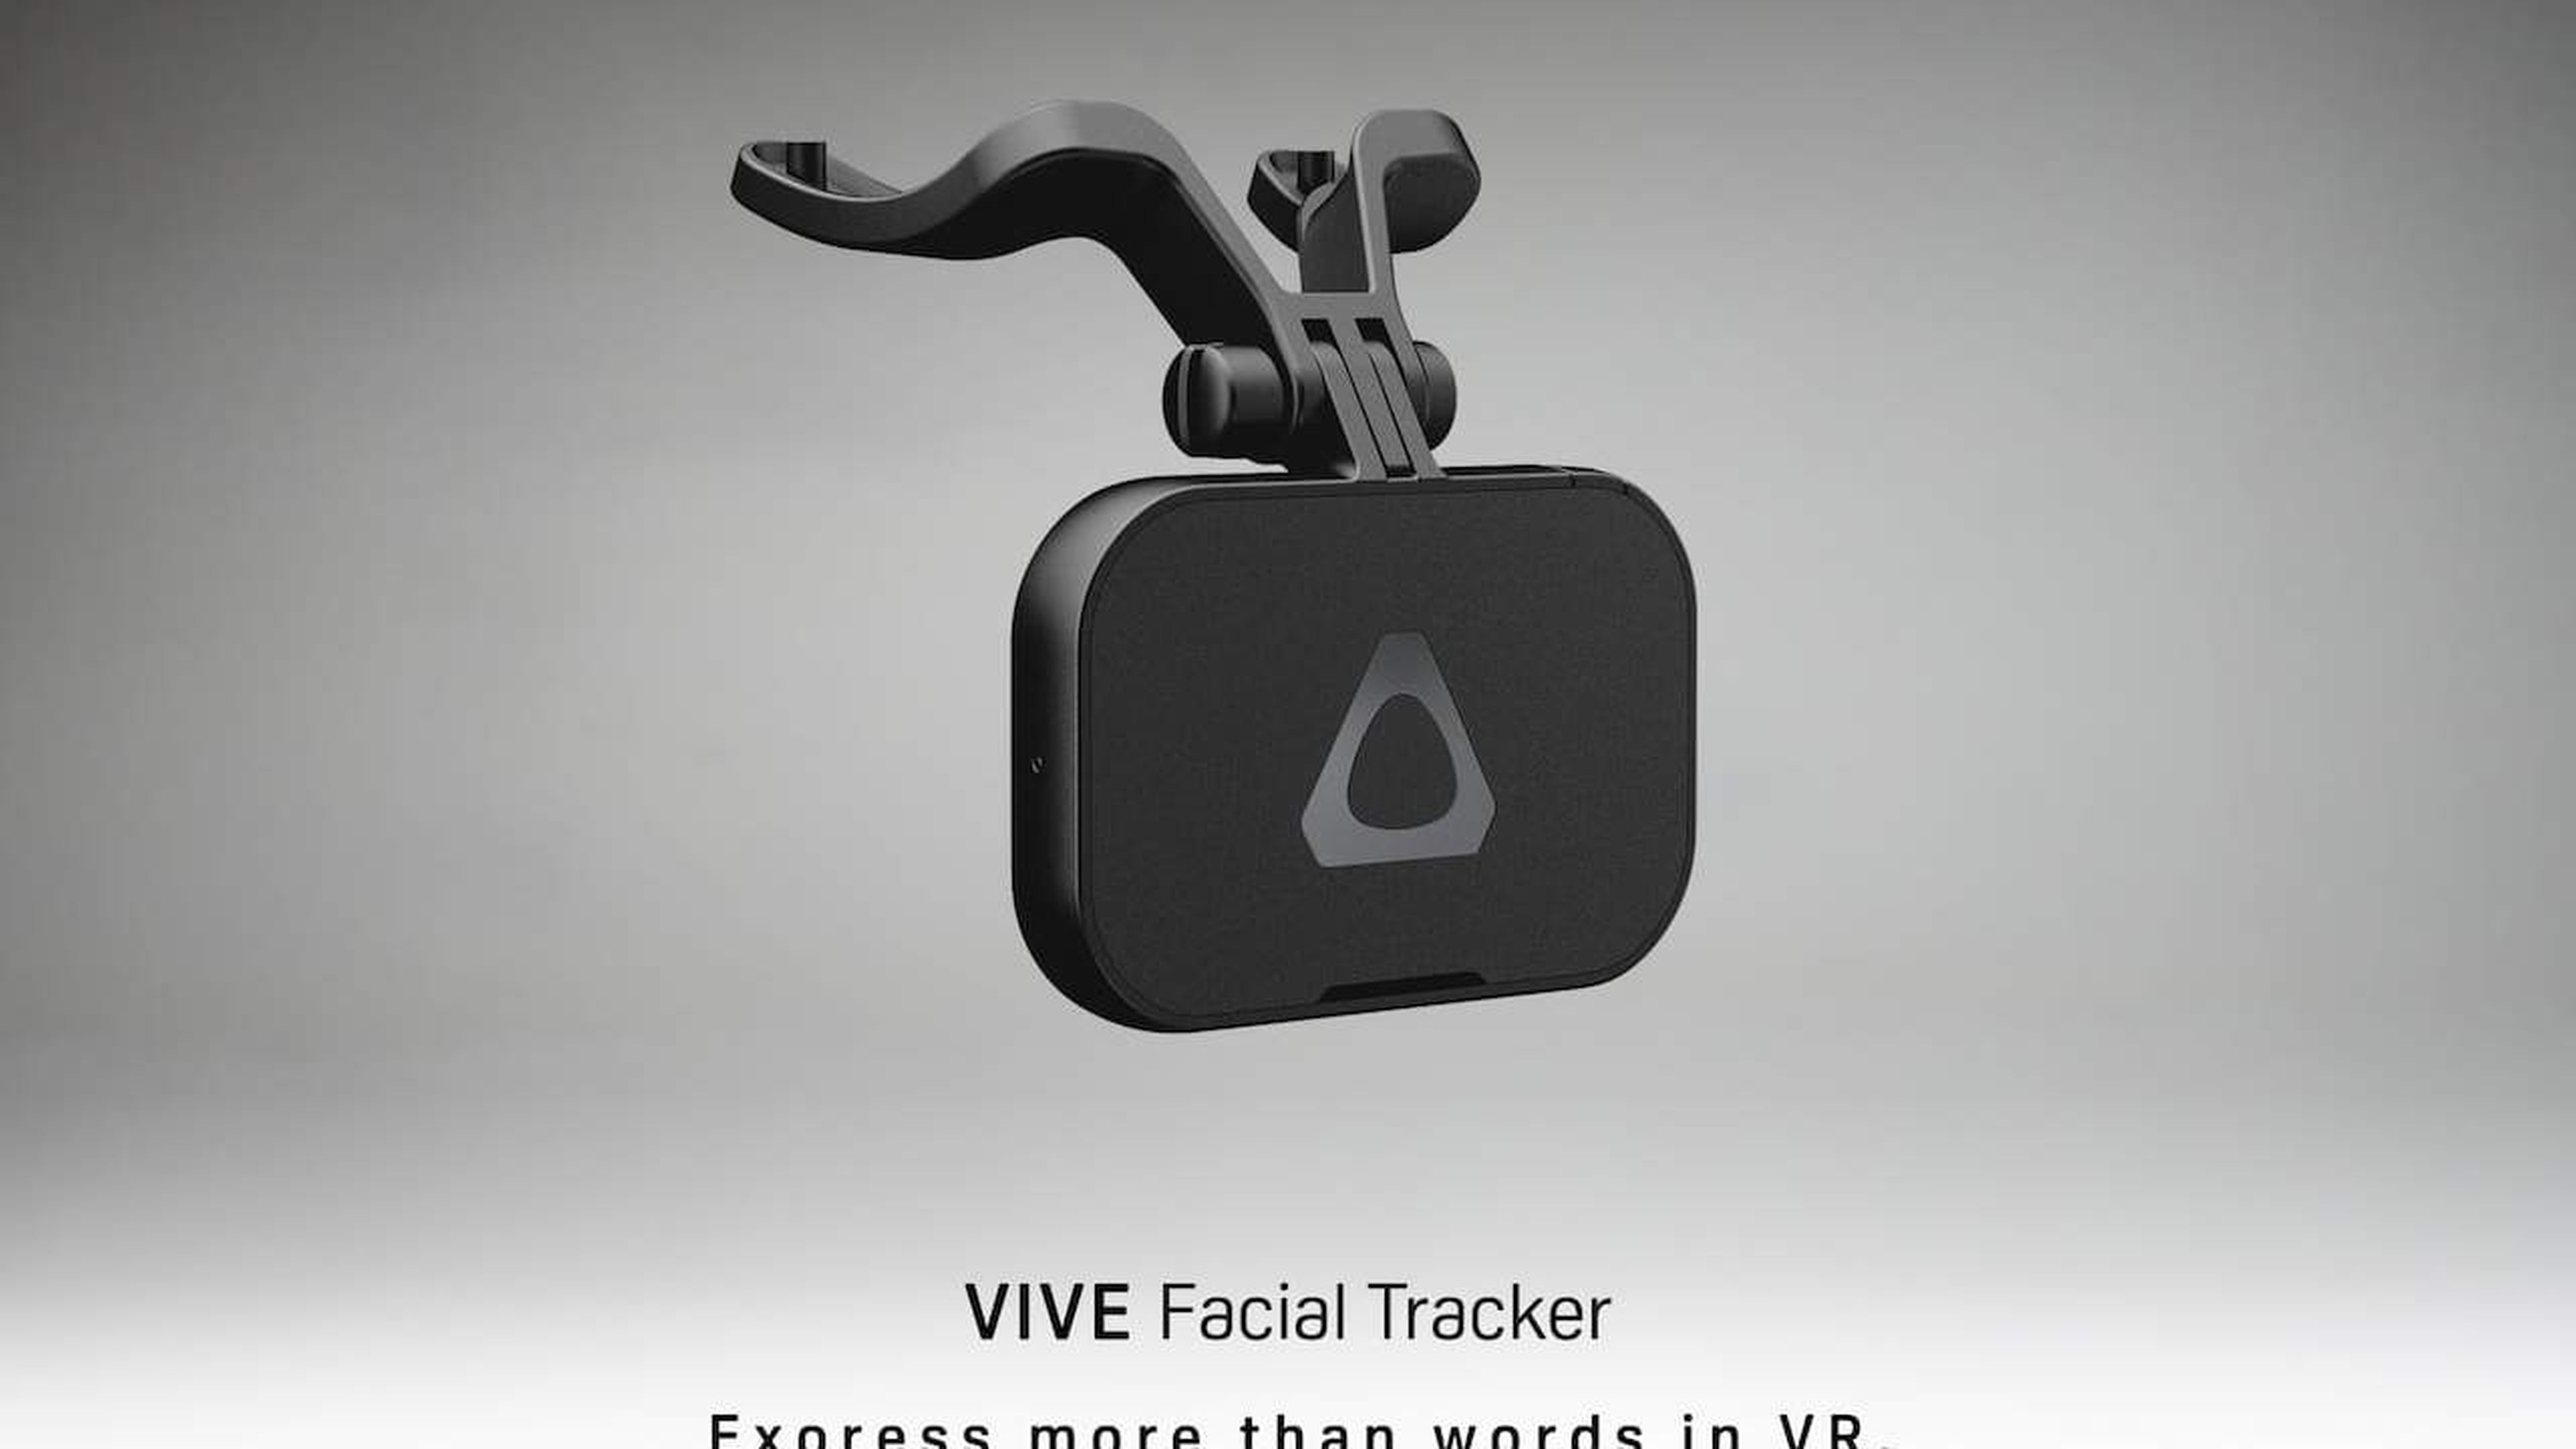 Vive Facial Tracker